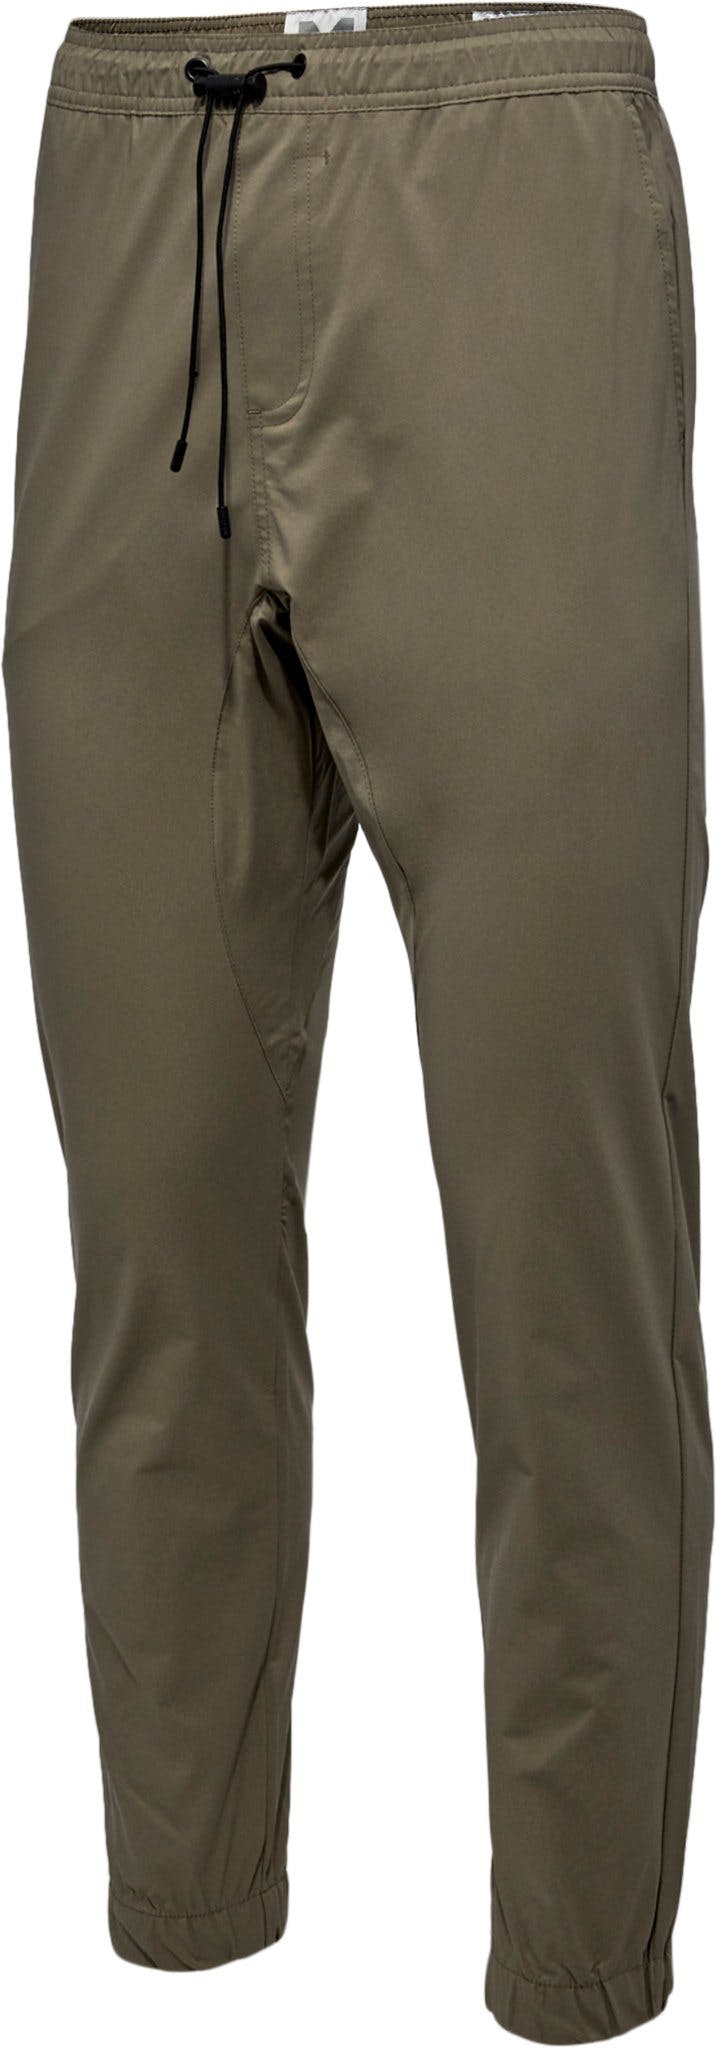 Numéro de l'image de la galerie de produits 3 pour le produit Pantalon de jogging technique léger - Homme